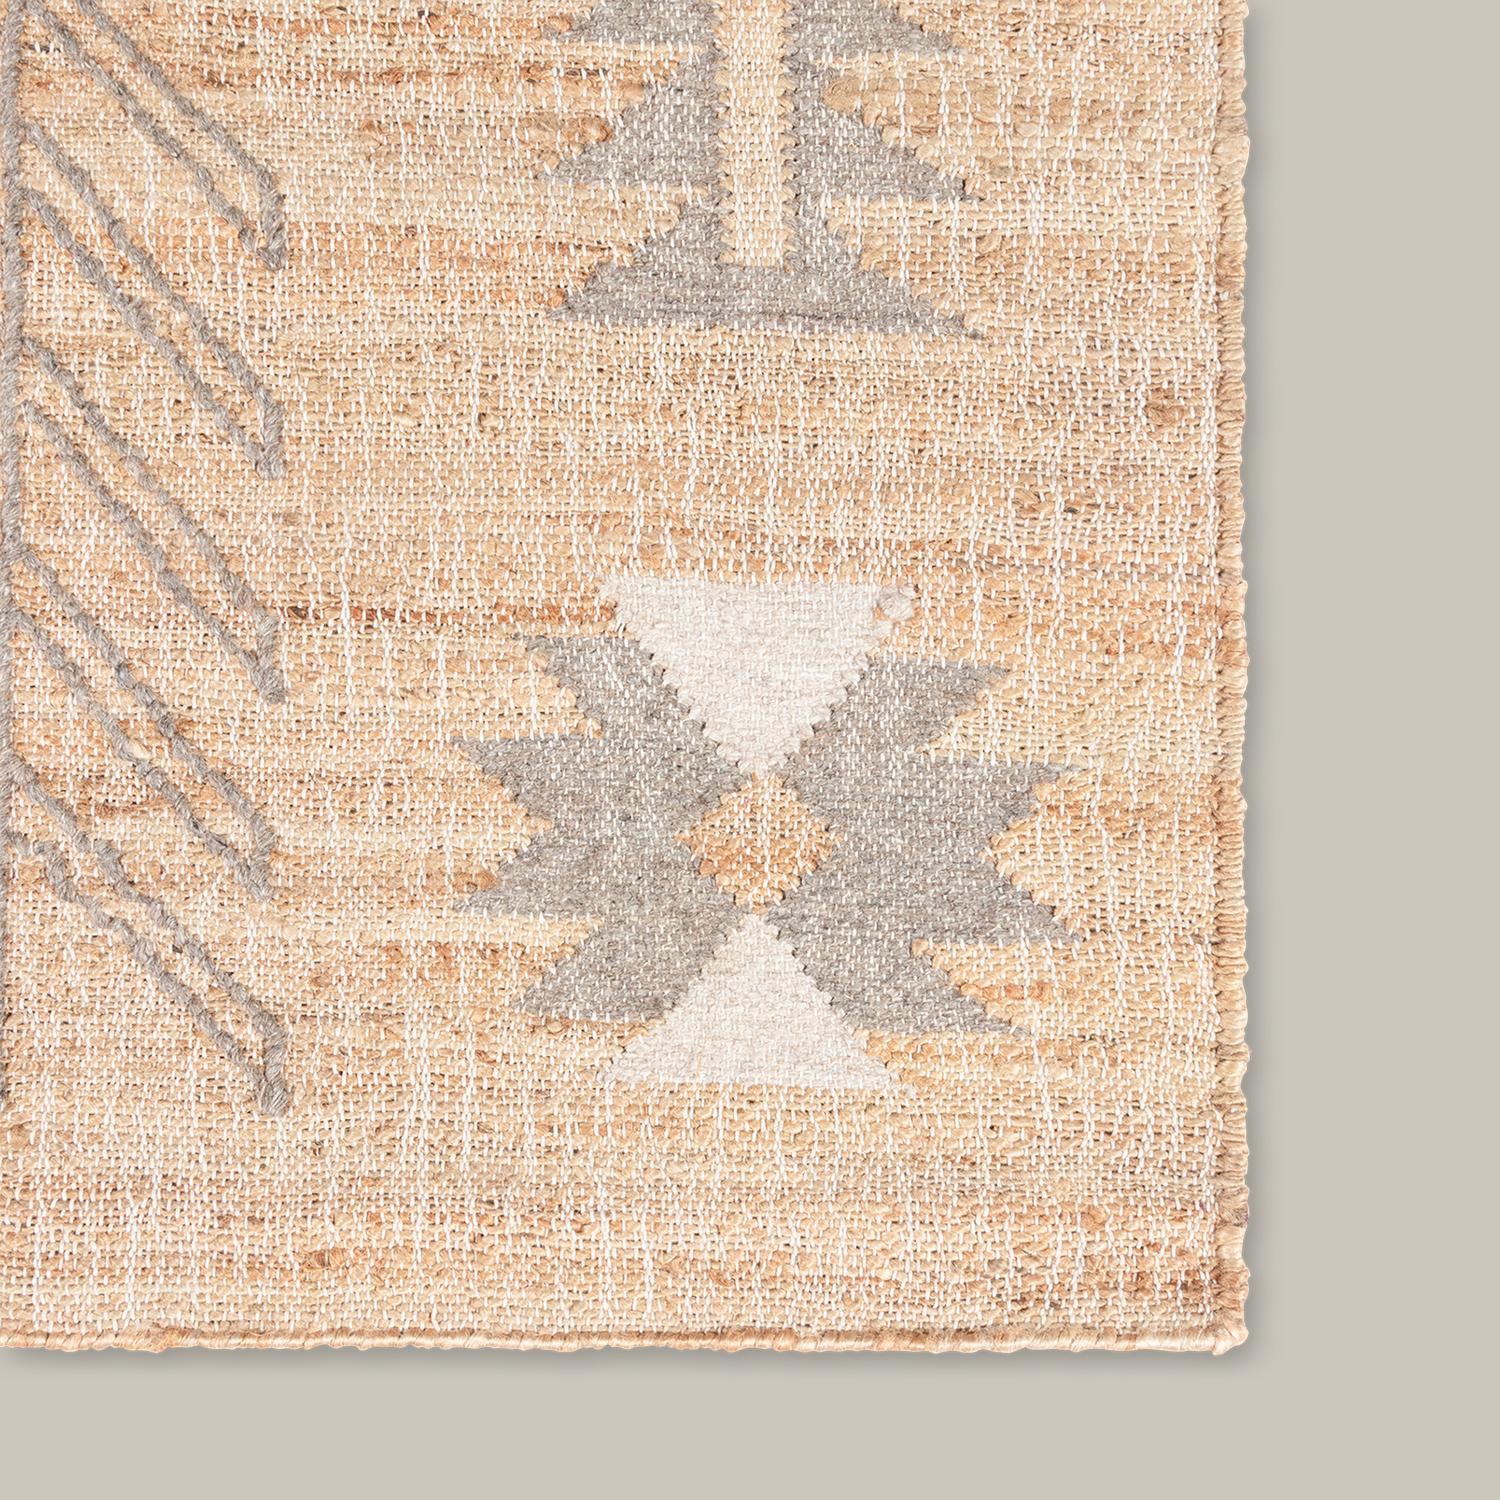 Avec un respect pour la symétrie et les formes géométriques simples, la collection Argan a été inspirée par les motifs traditionnels des tissus de boue africains. Fabriqué à partir d'une combinaison de jute et de laine tissée à la main, chaque tapis